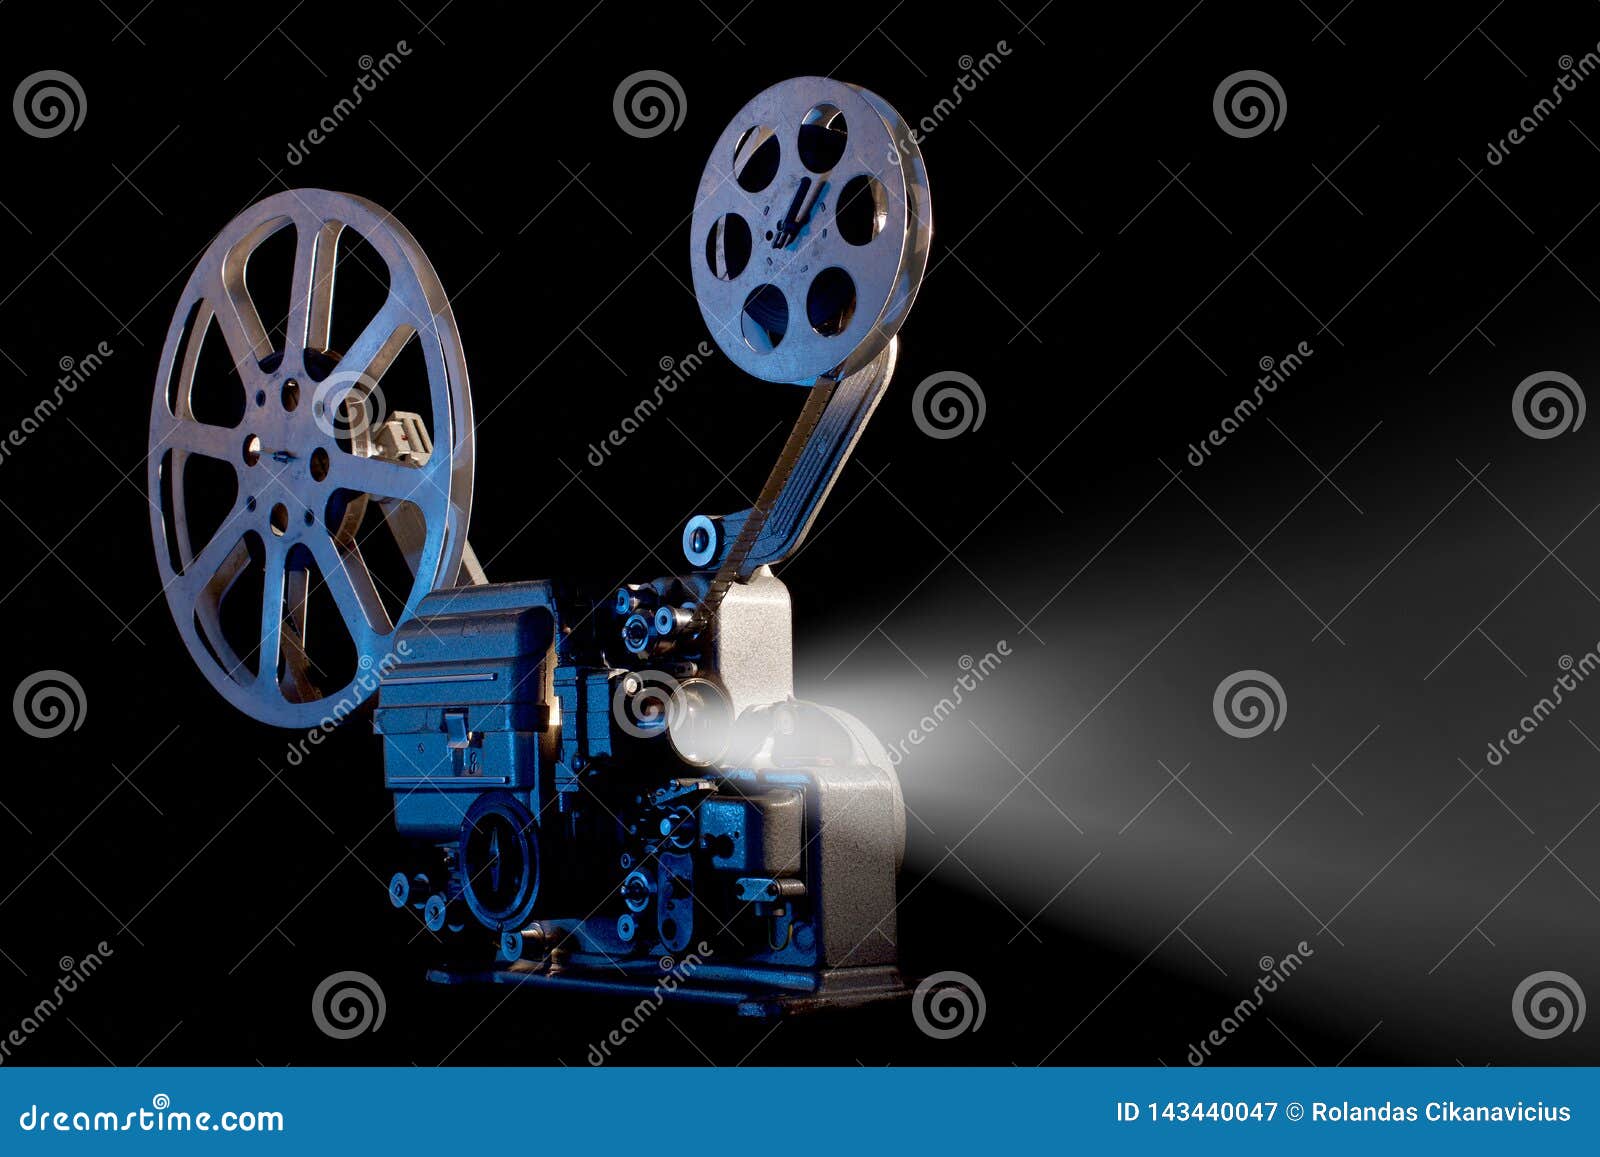 https://thumbs.dreamstime.com/z/movie-projector-film-reels-black-background-vintage-143440047.jpg